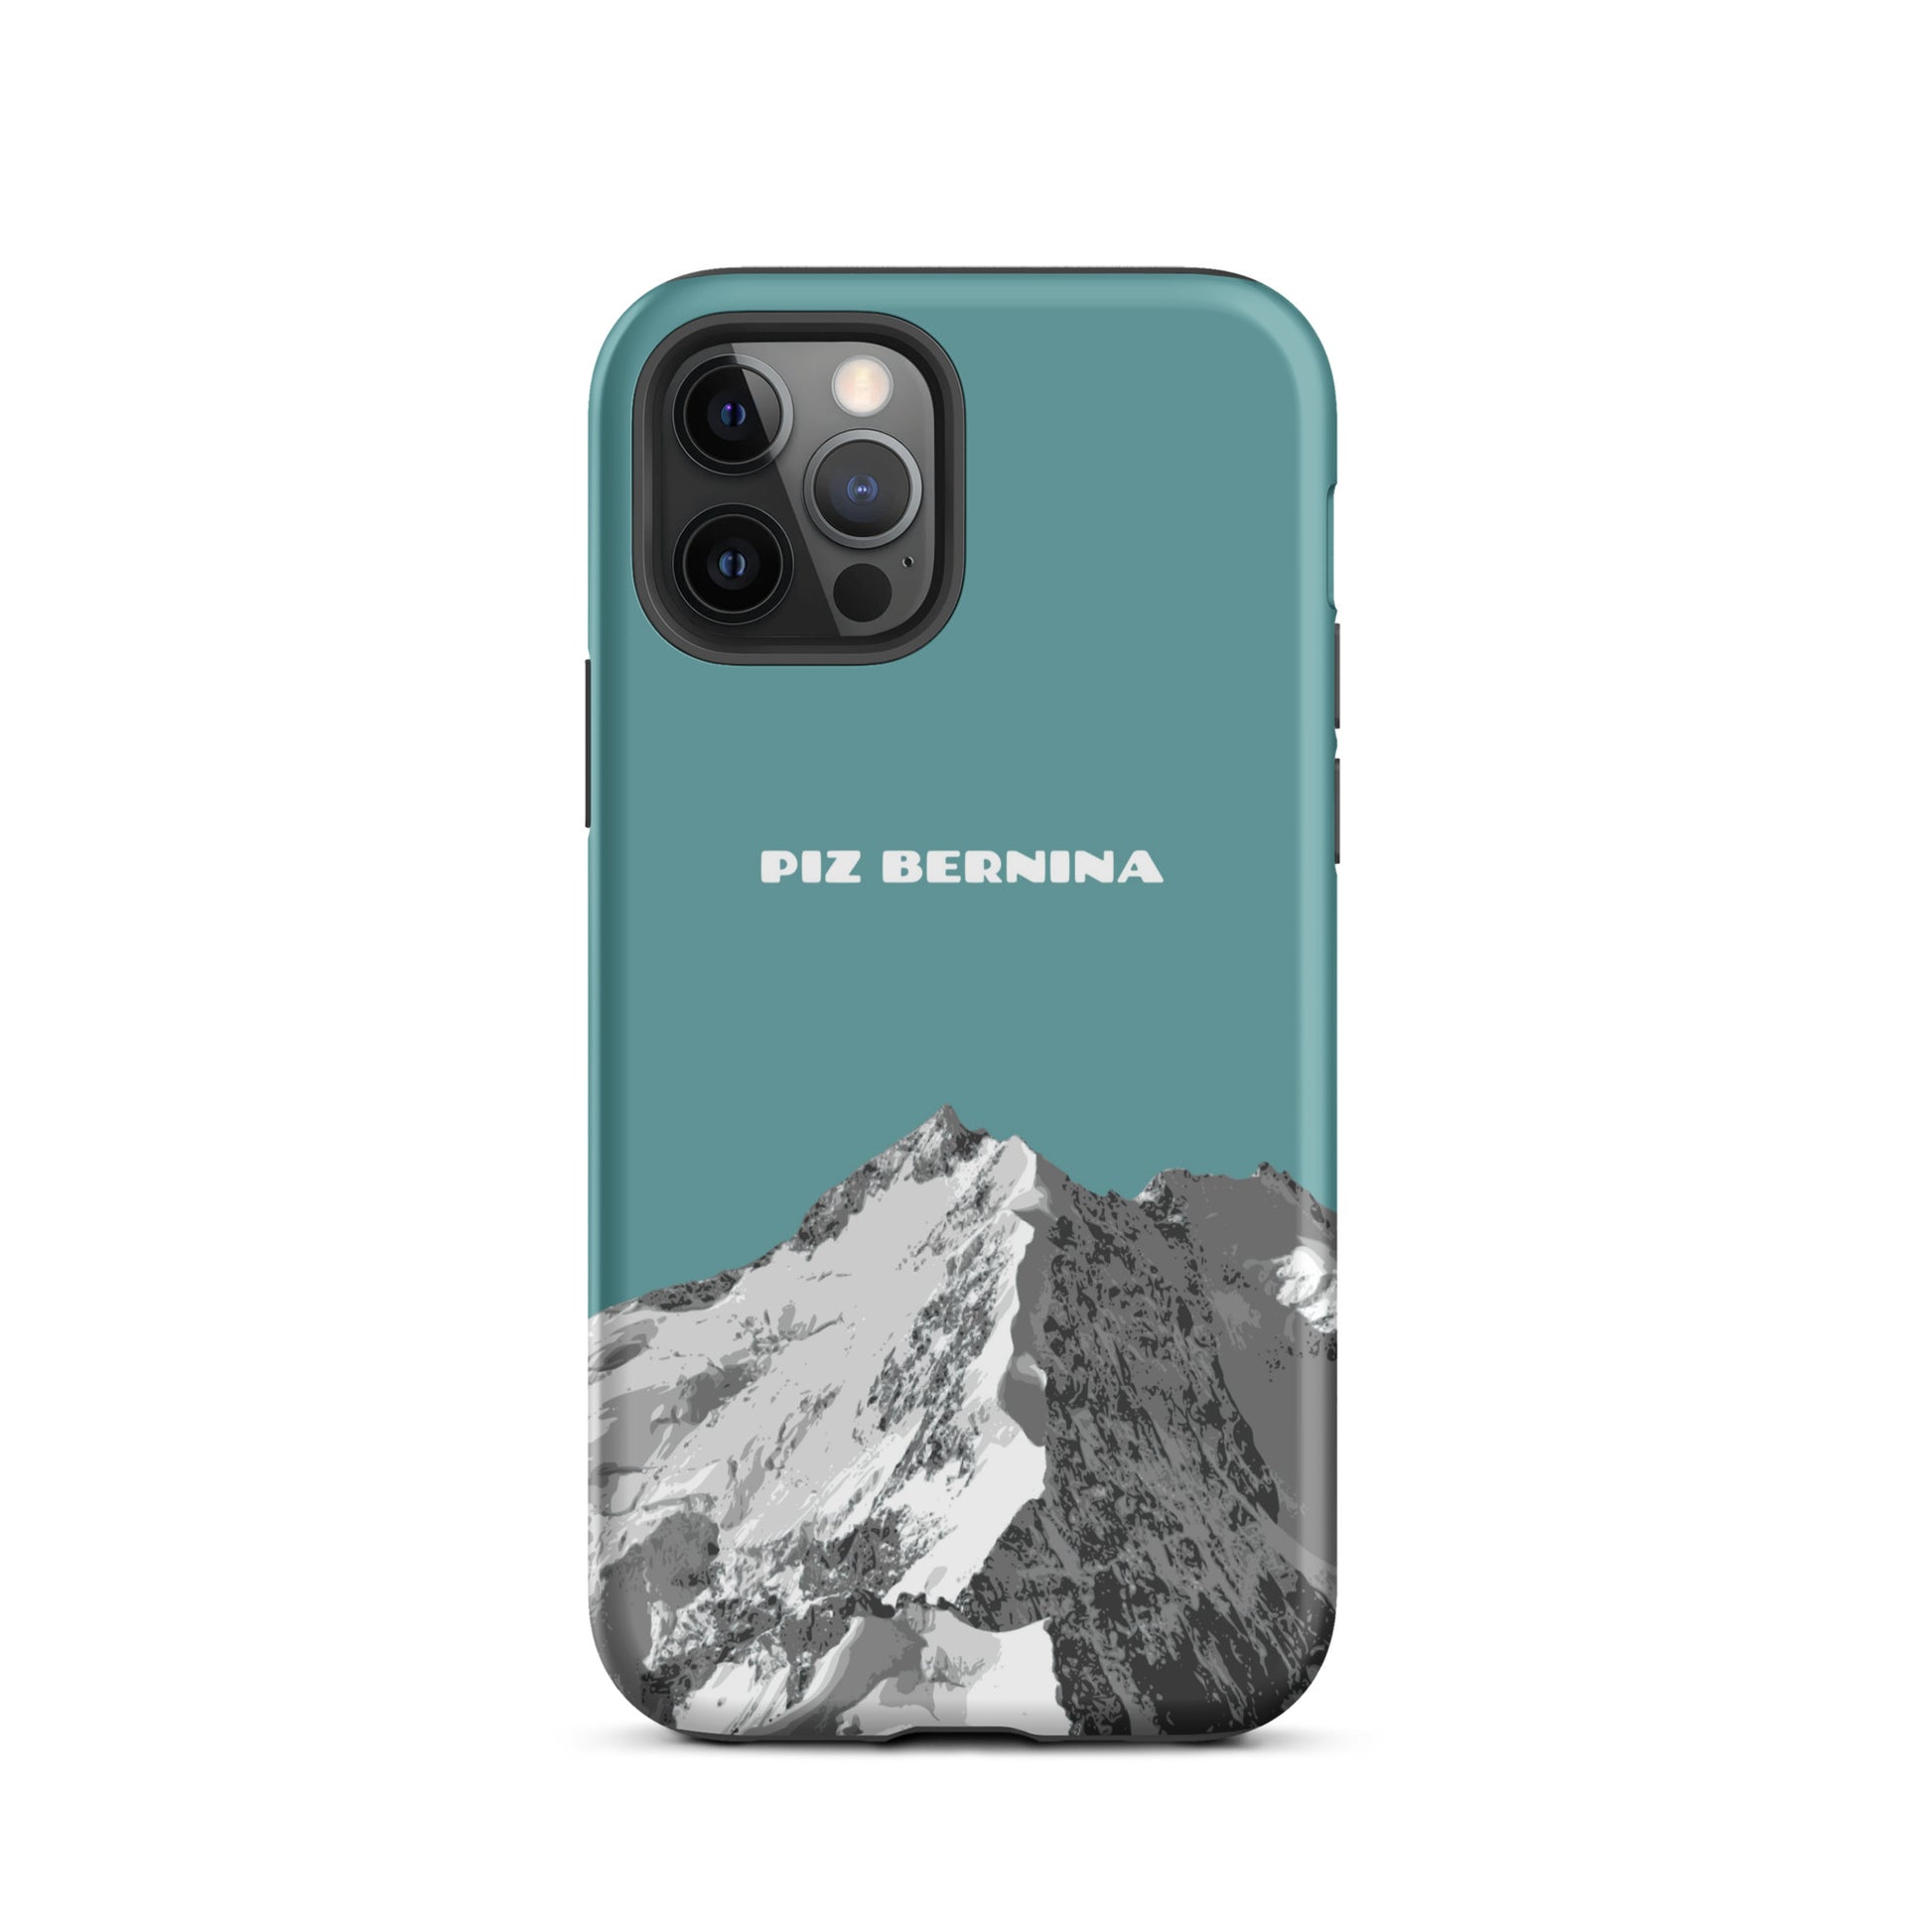 Hülle für das iPhone 12 Pro von Apple in der Farbe Kadettenblau, dass den Piz Bernina in Graubünden zeigt.